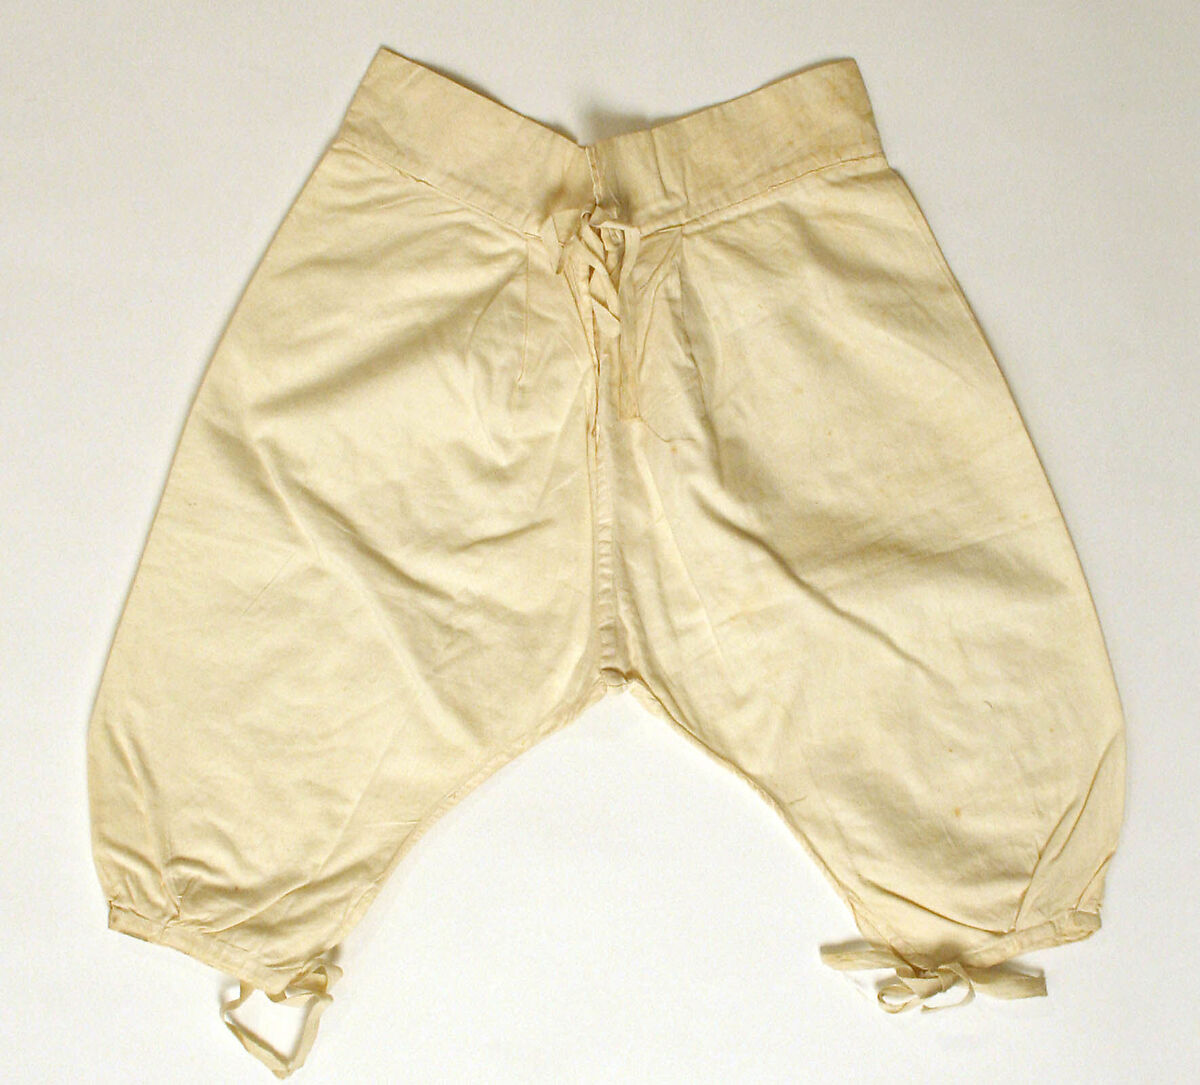 Trousers, linen, Greek 